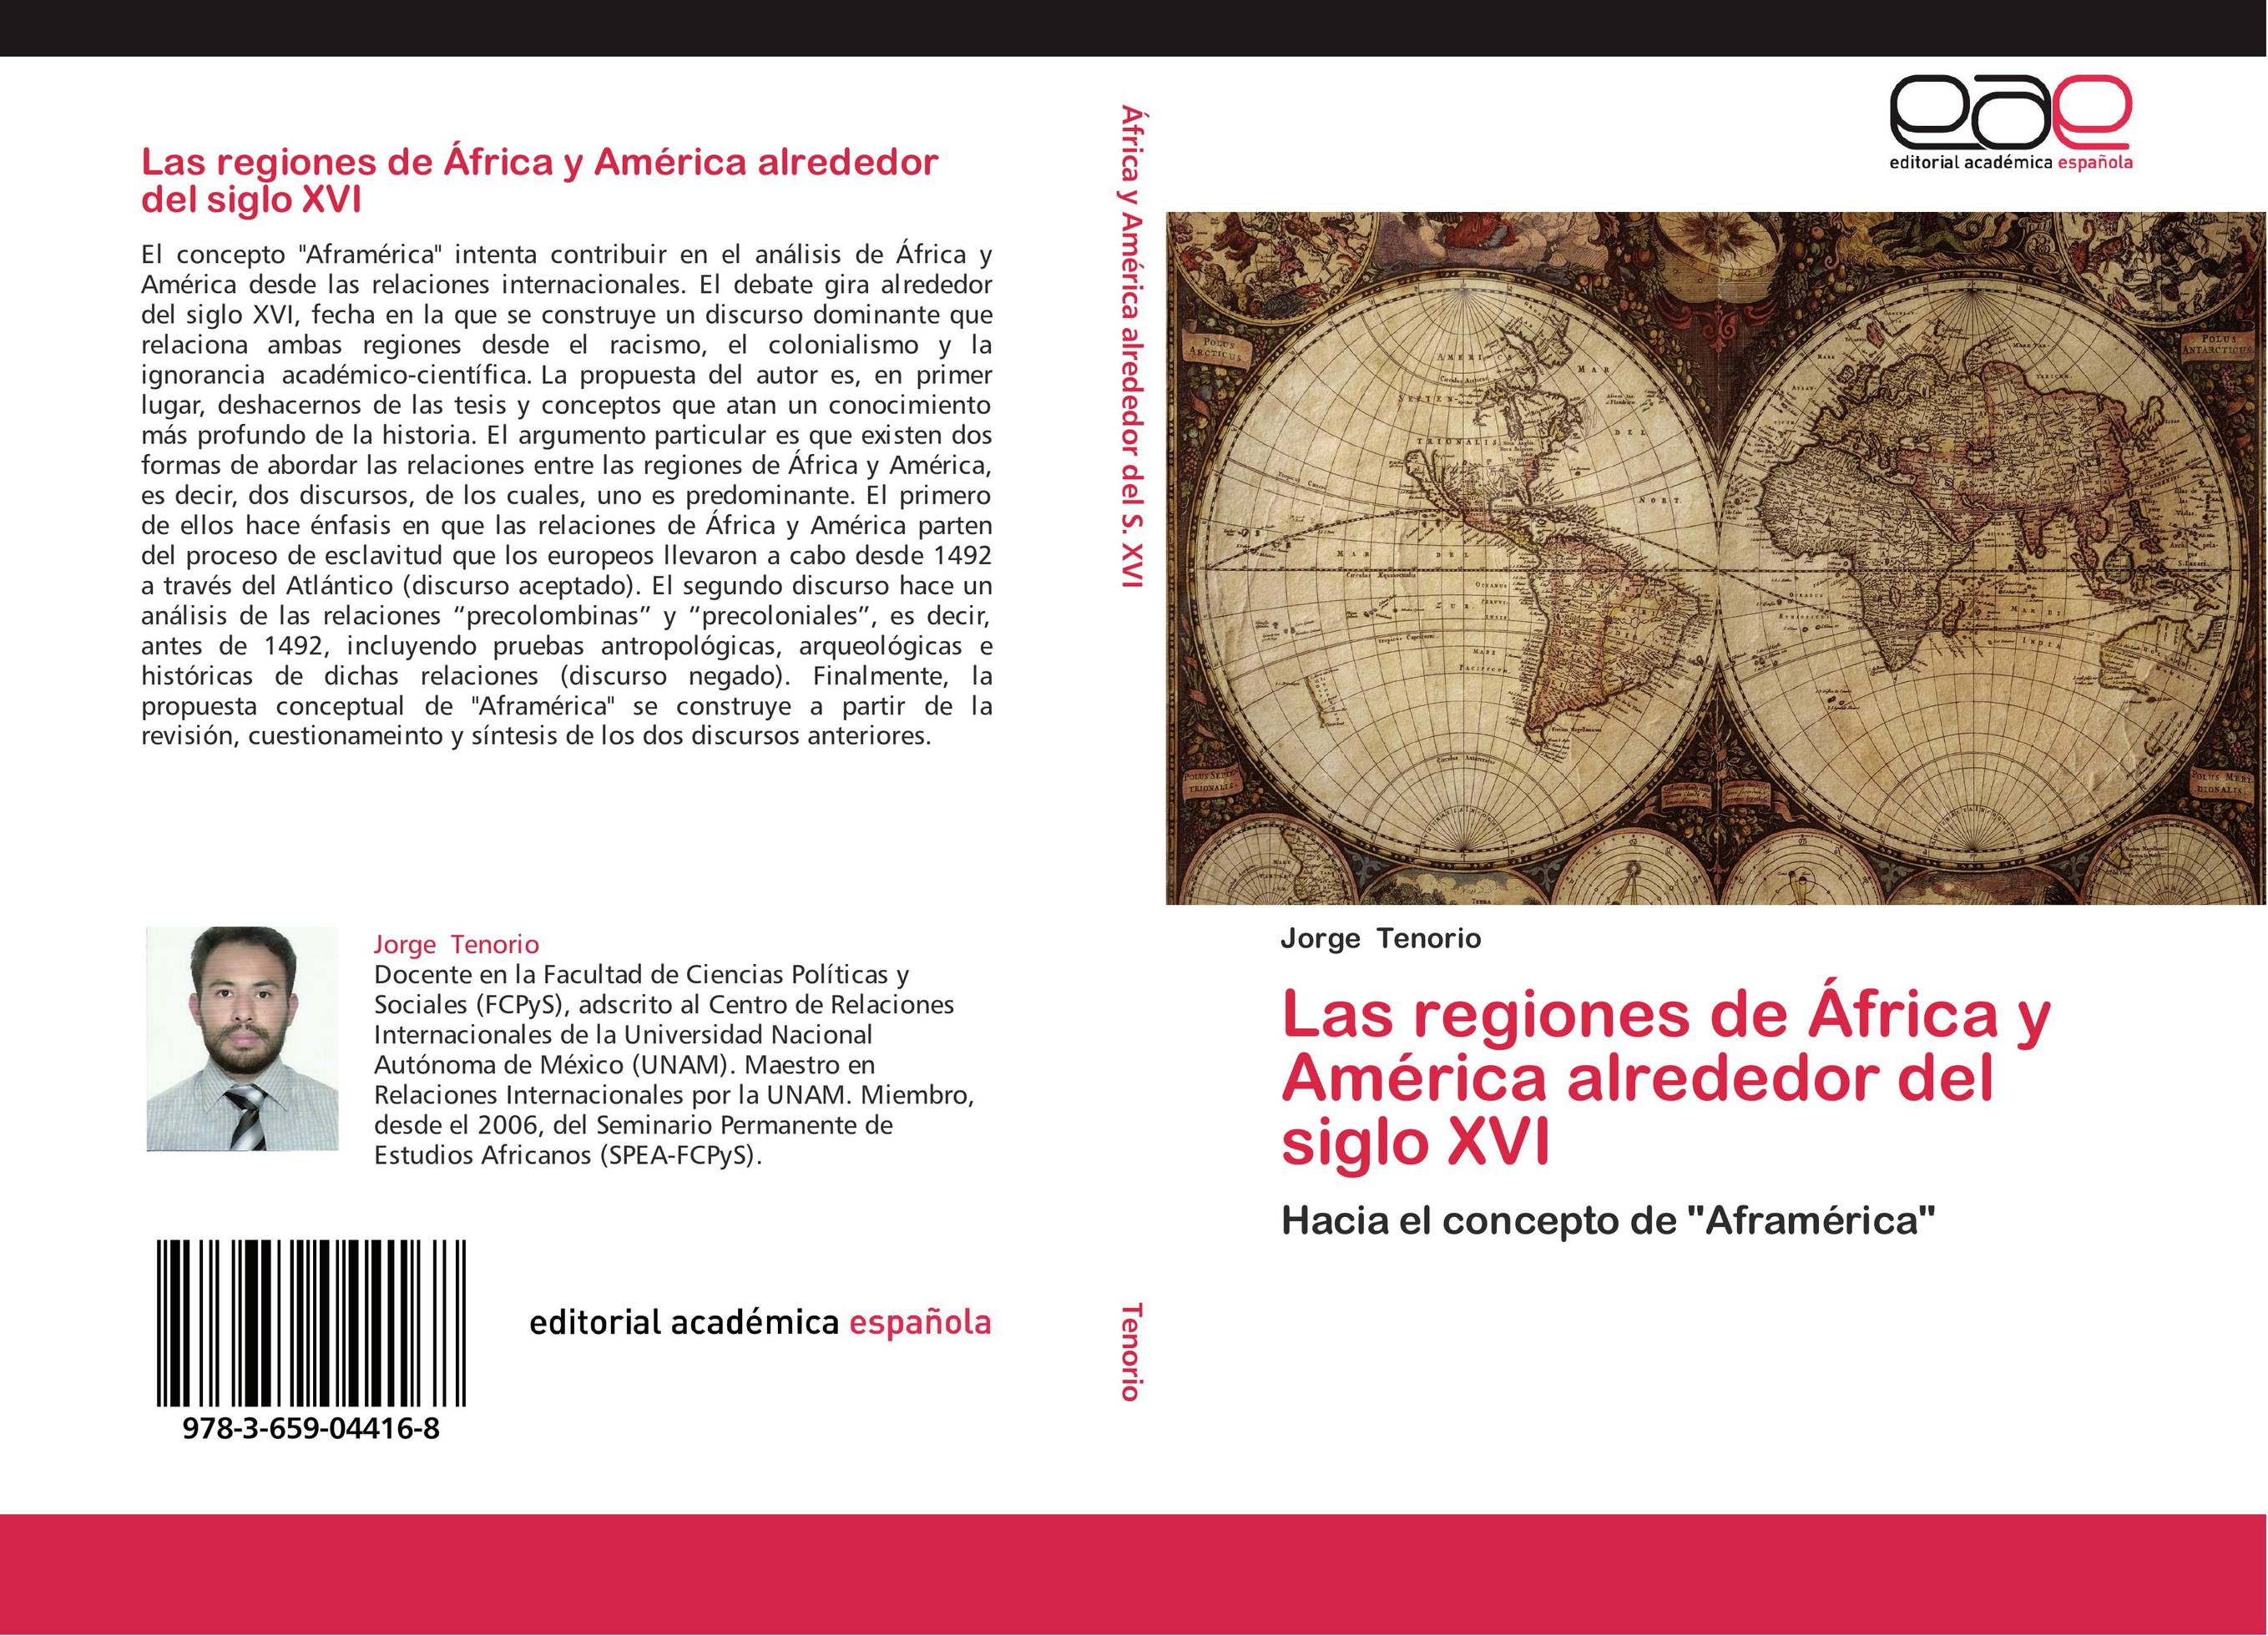 Las regiones de África y América alrededor del siglo XVI